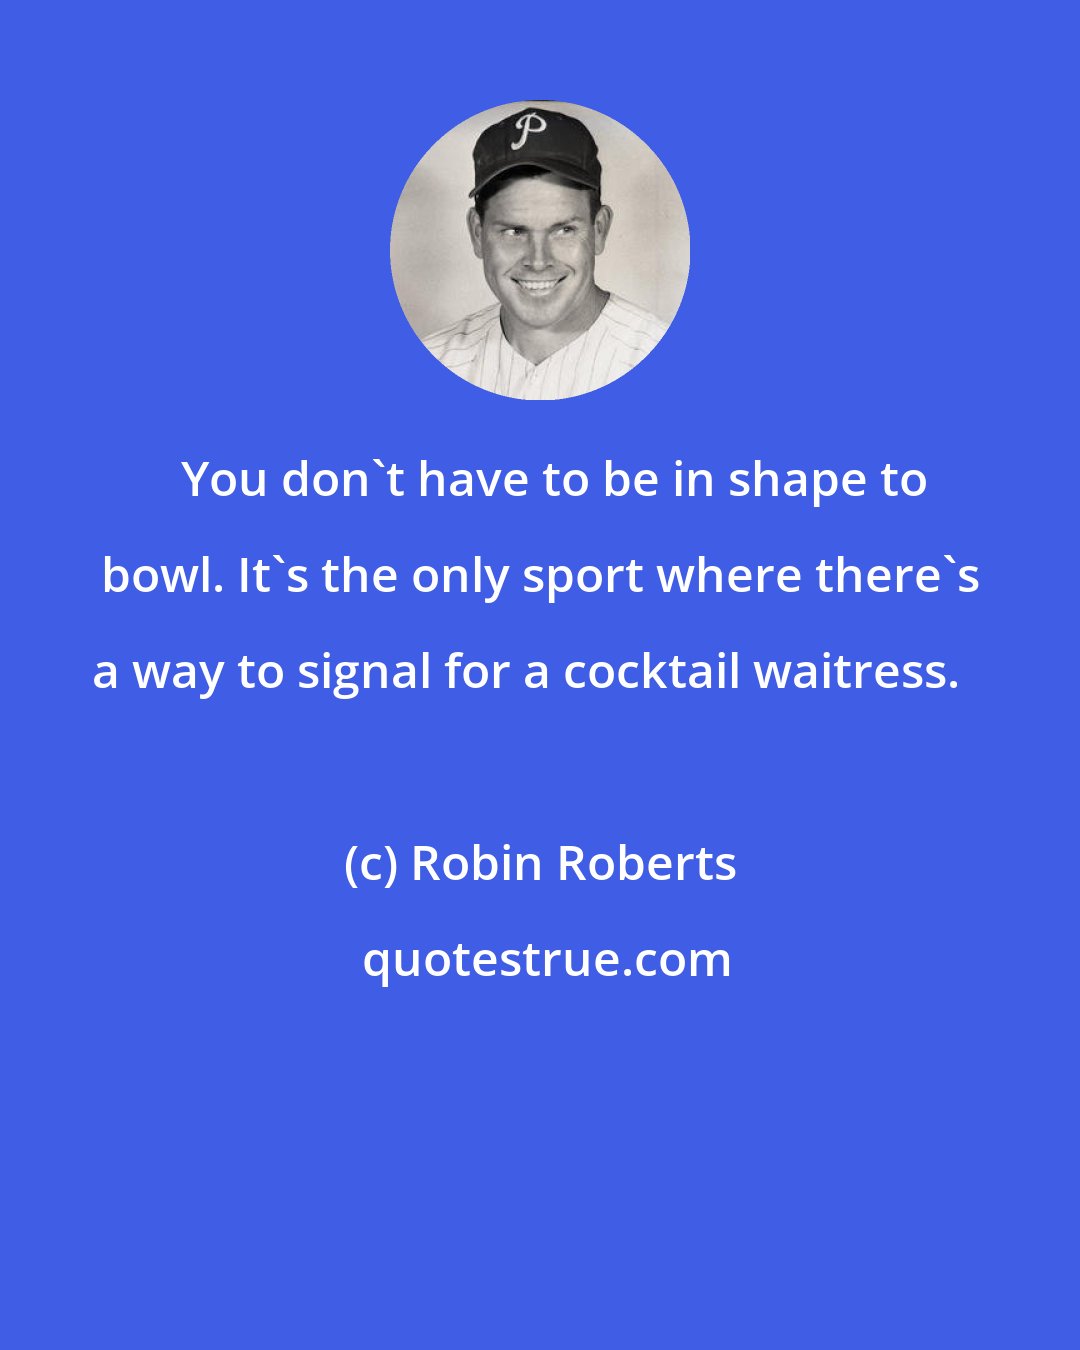 Robin Roberts: You don't have to be in shape to bowl. It's the only sport where there's a way to signal for a cocktail waitress.